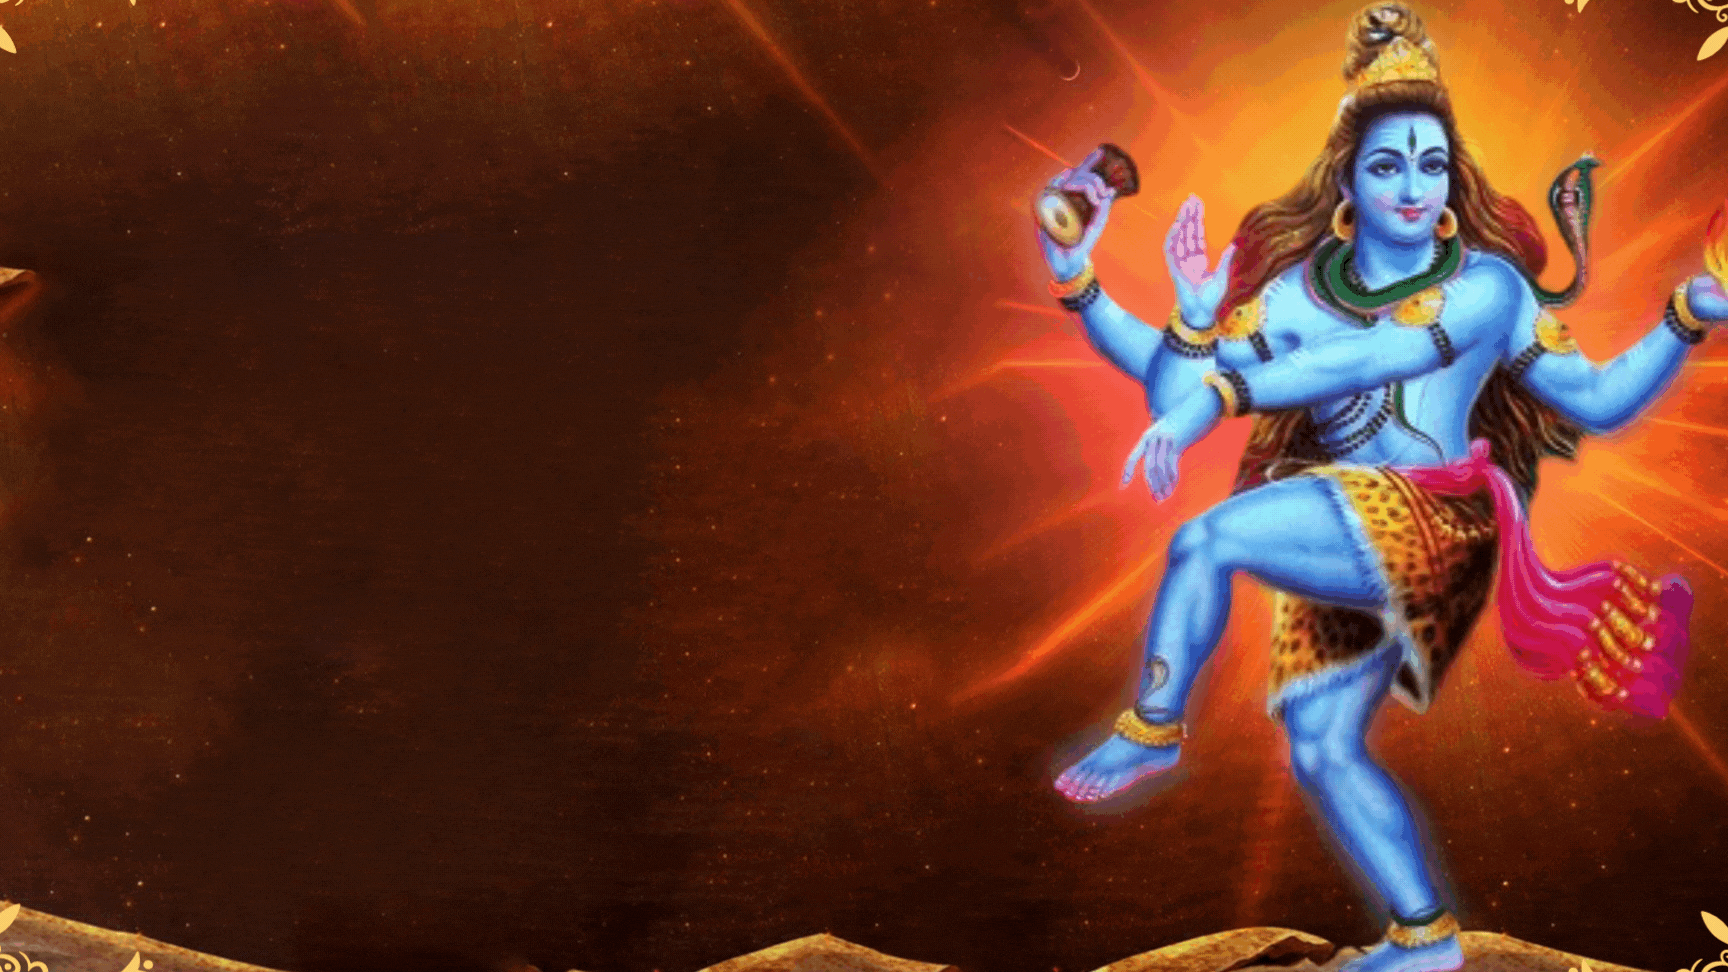 Significado de Arudra Darshan : Danza Cósmica de Shiva | Arudra Darisanam en el mes de Margazhi